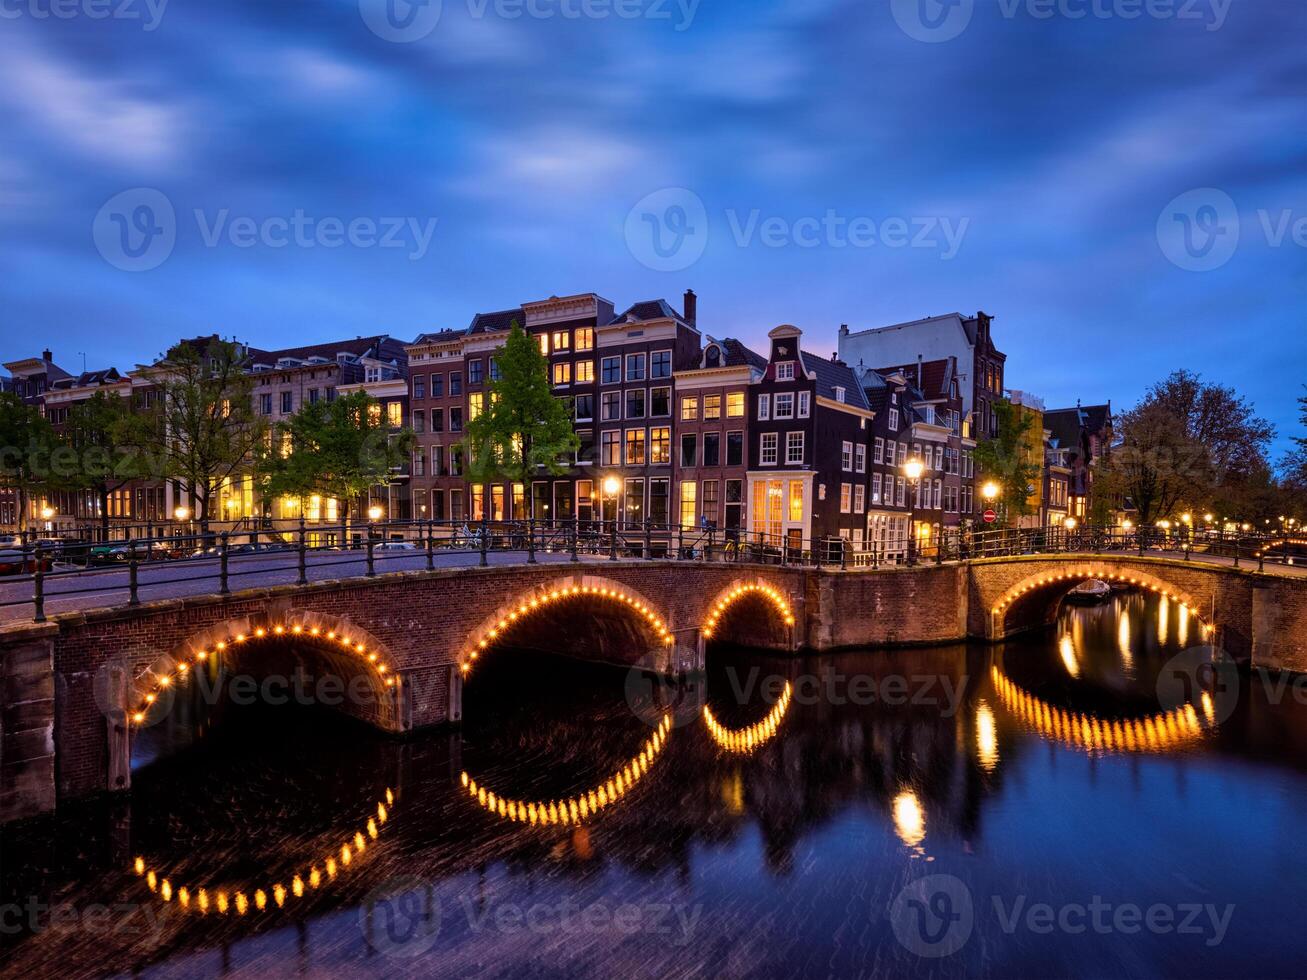 Amsterdam canale, ponte e medievale case nel il sera foto